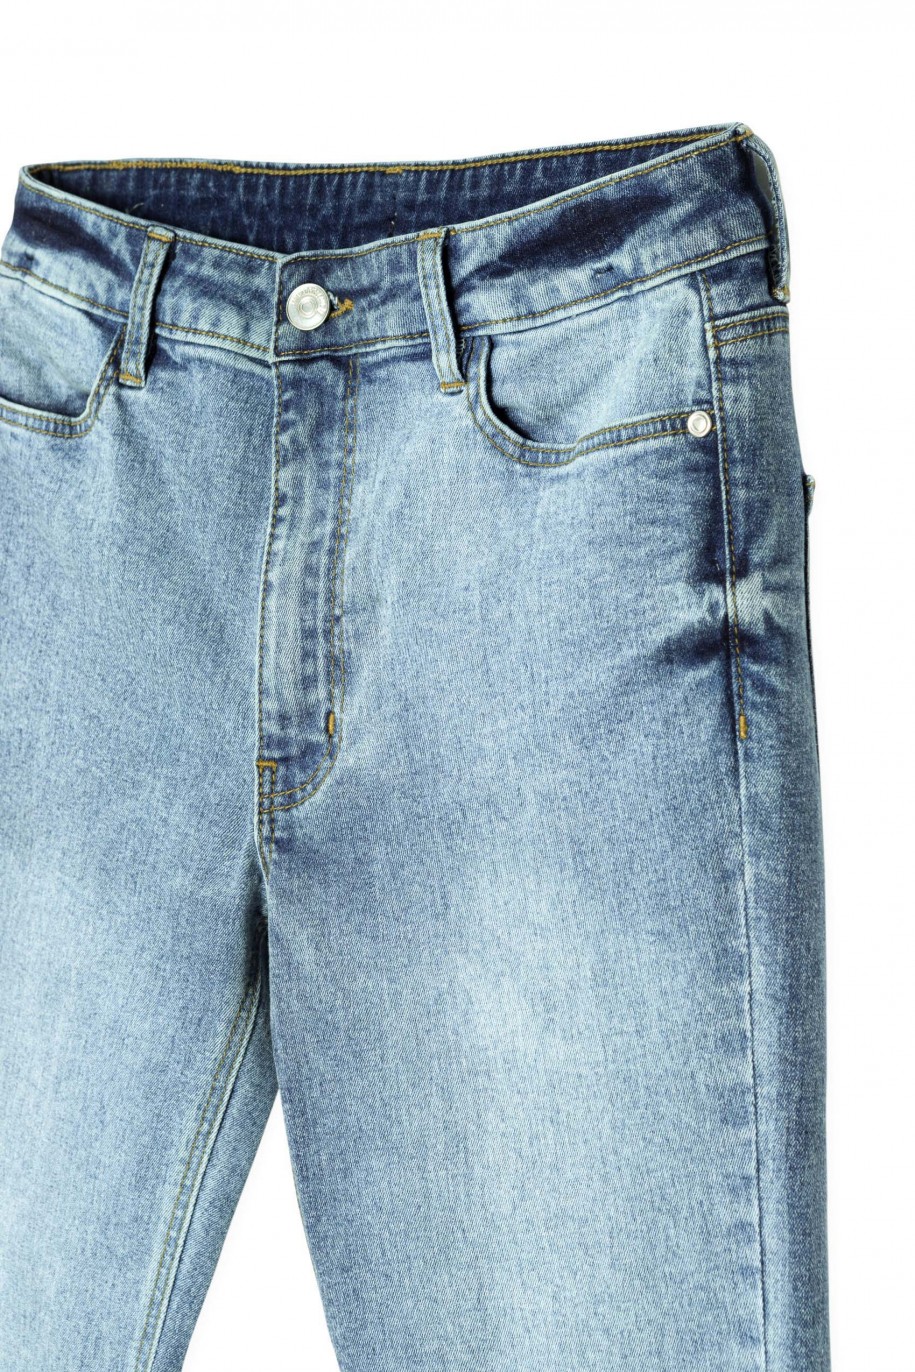 Niebieskie jeansy typu dzwony - 38423